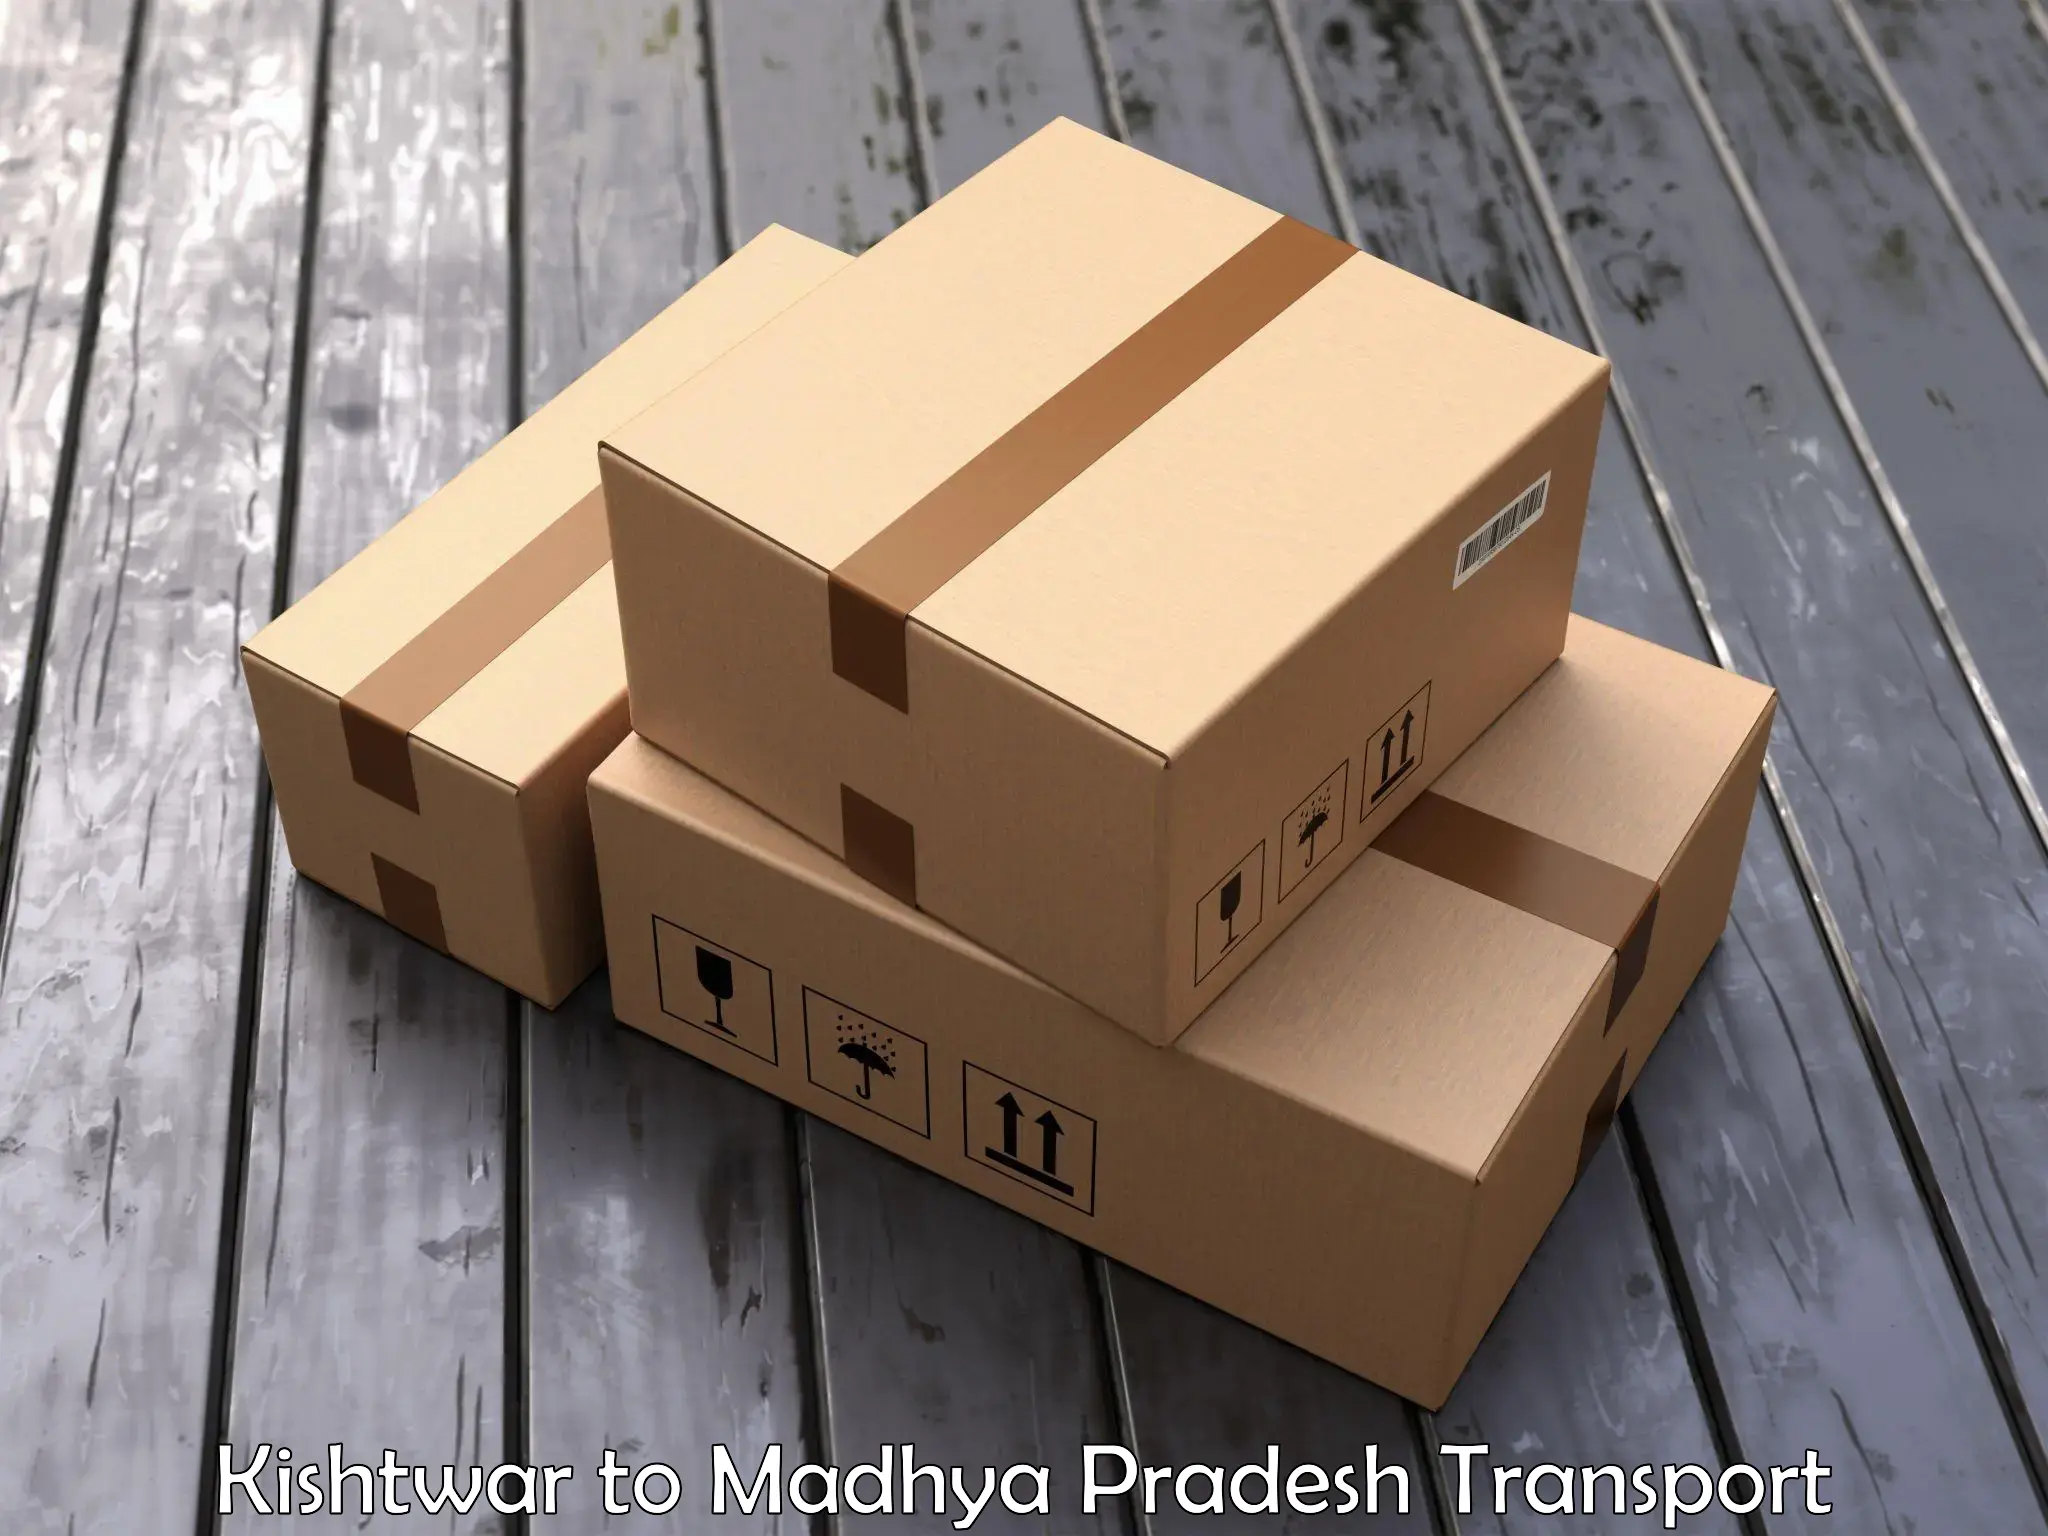 Parcel transport services Kishtwar to Indore